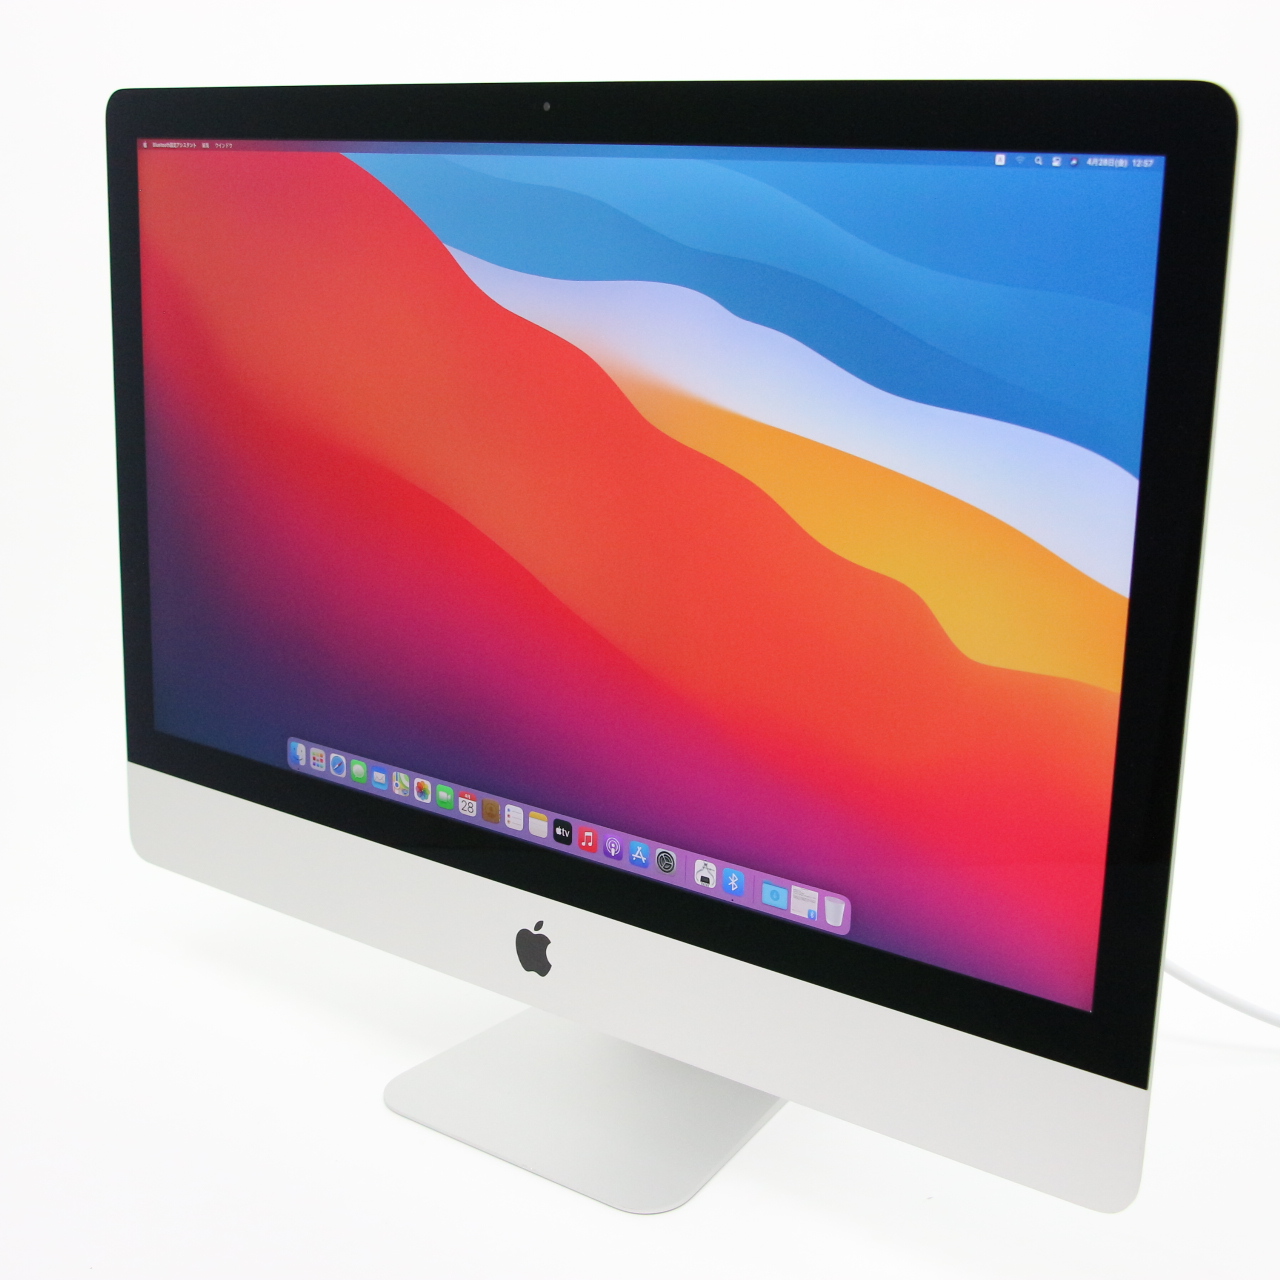 ジャンク iMac 21.5インチ Late 2012 i7 メモリ16GB - Macデスクトップ